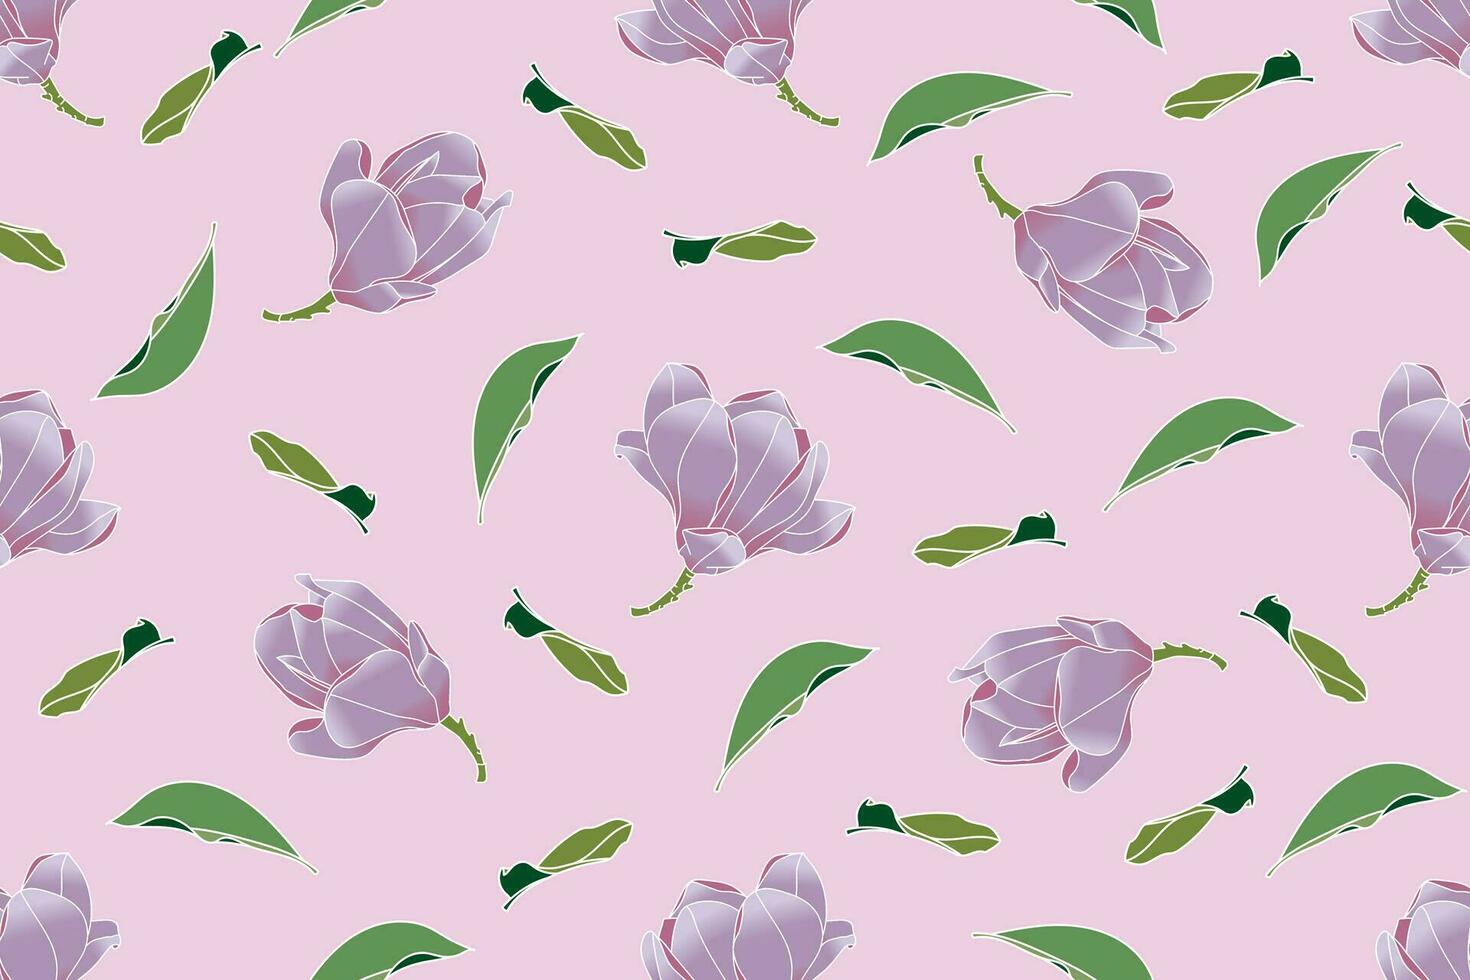 illustration de verbanique soucoupe magnolia fleur avec feuilles sur rose Contexte. vecteur